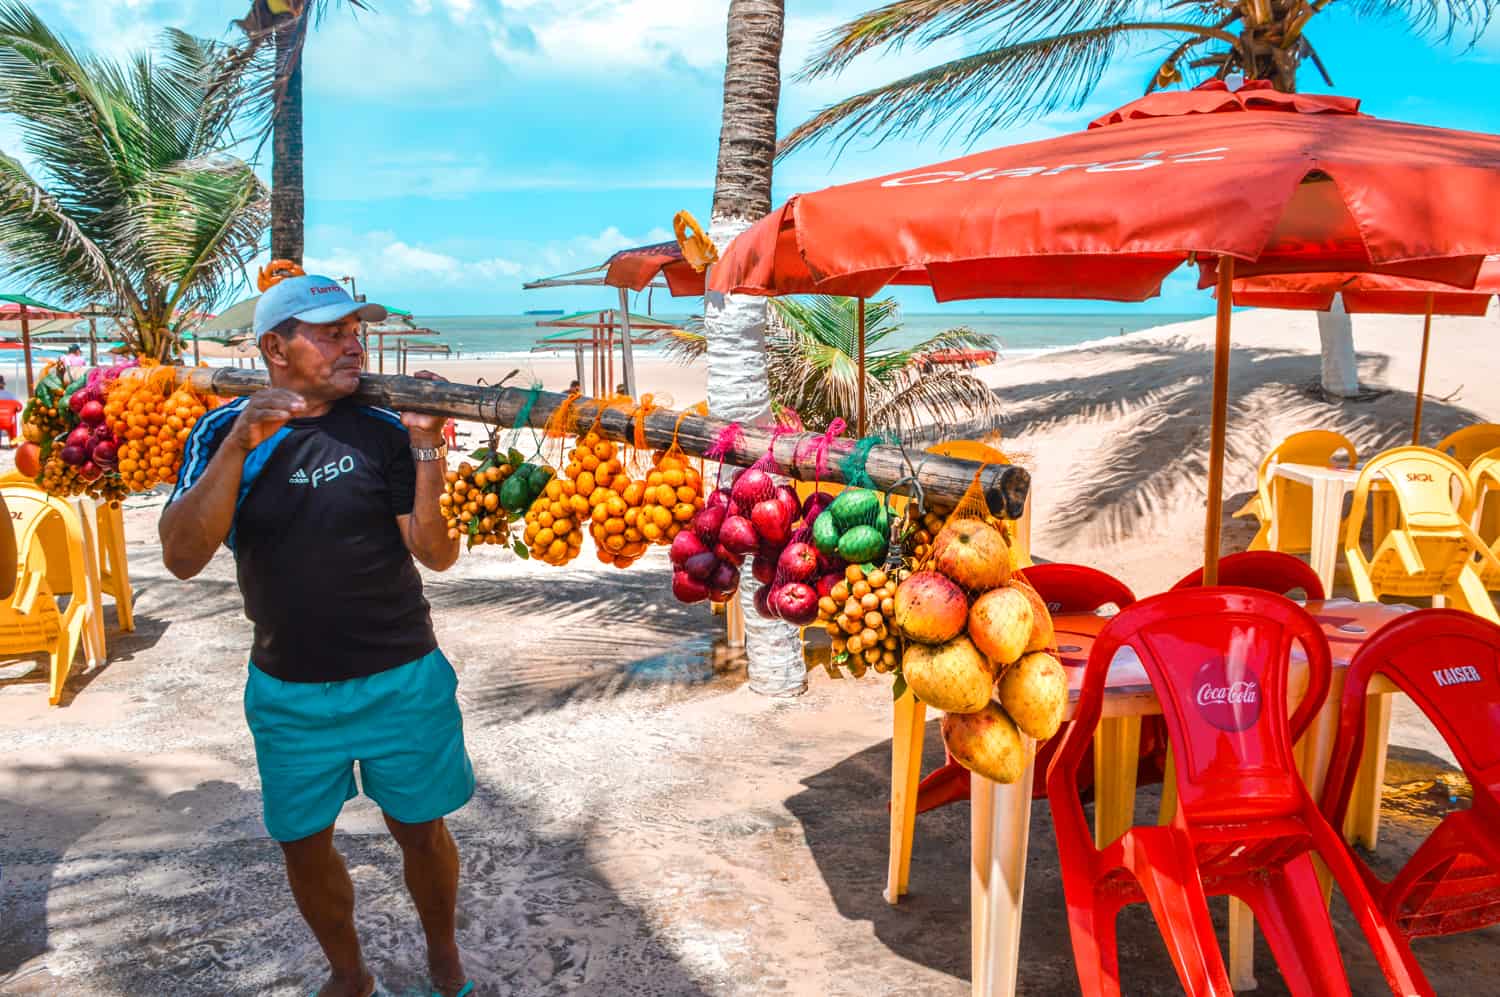 Vendedor de frutas na praia em São Luís (Maranhão)